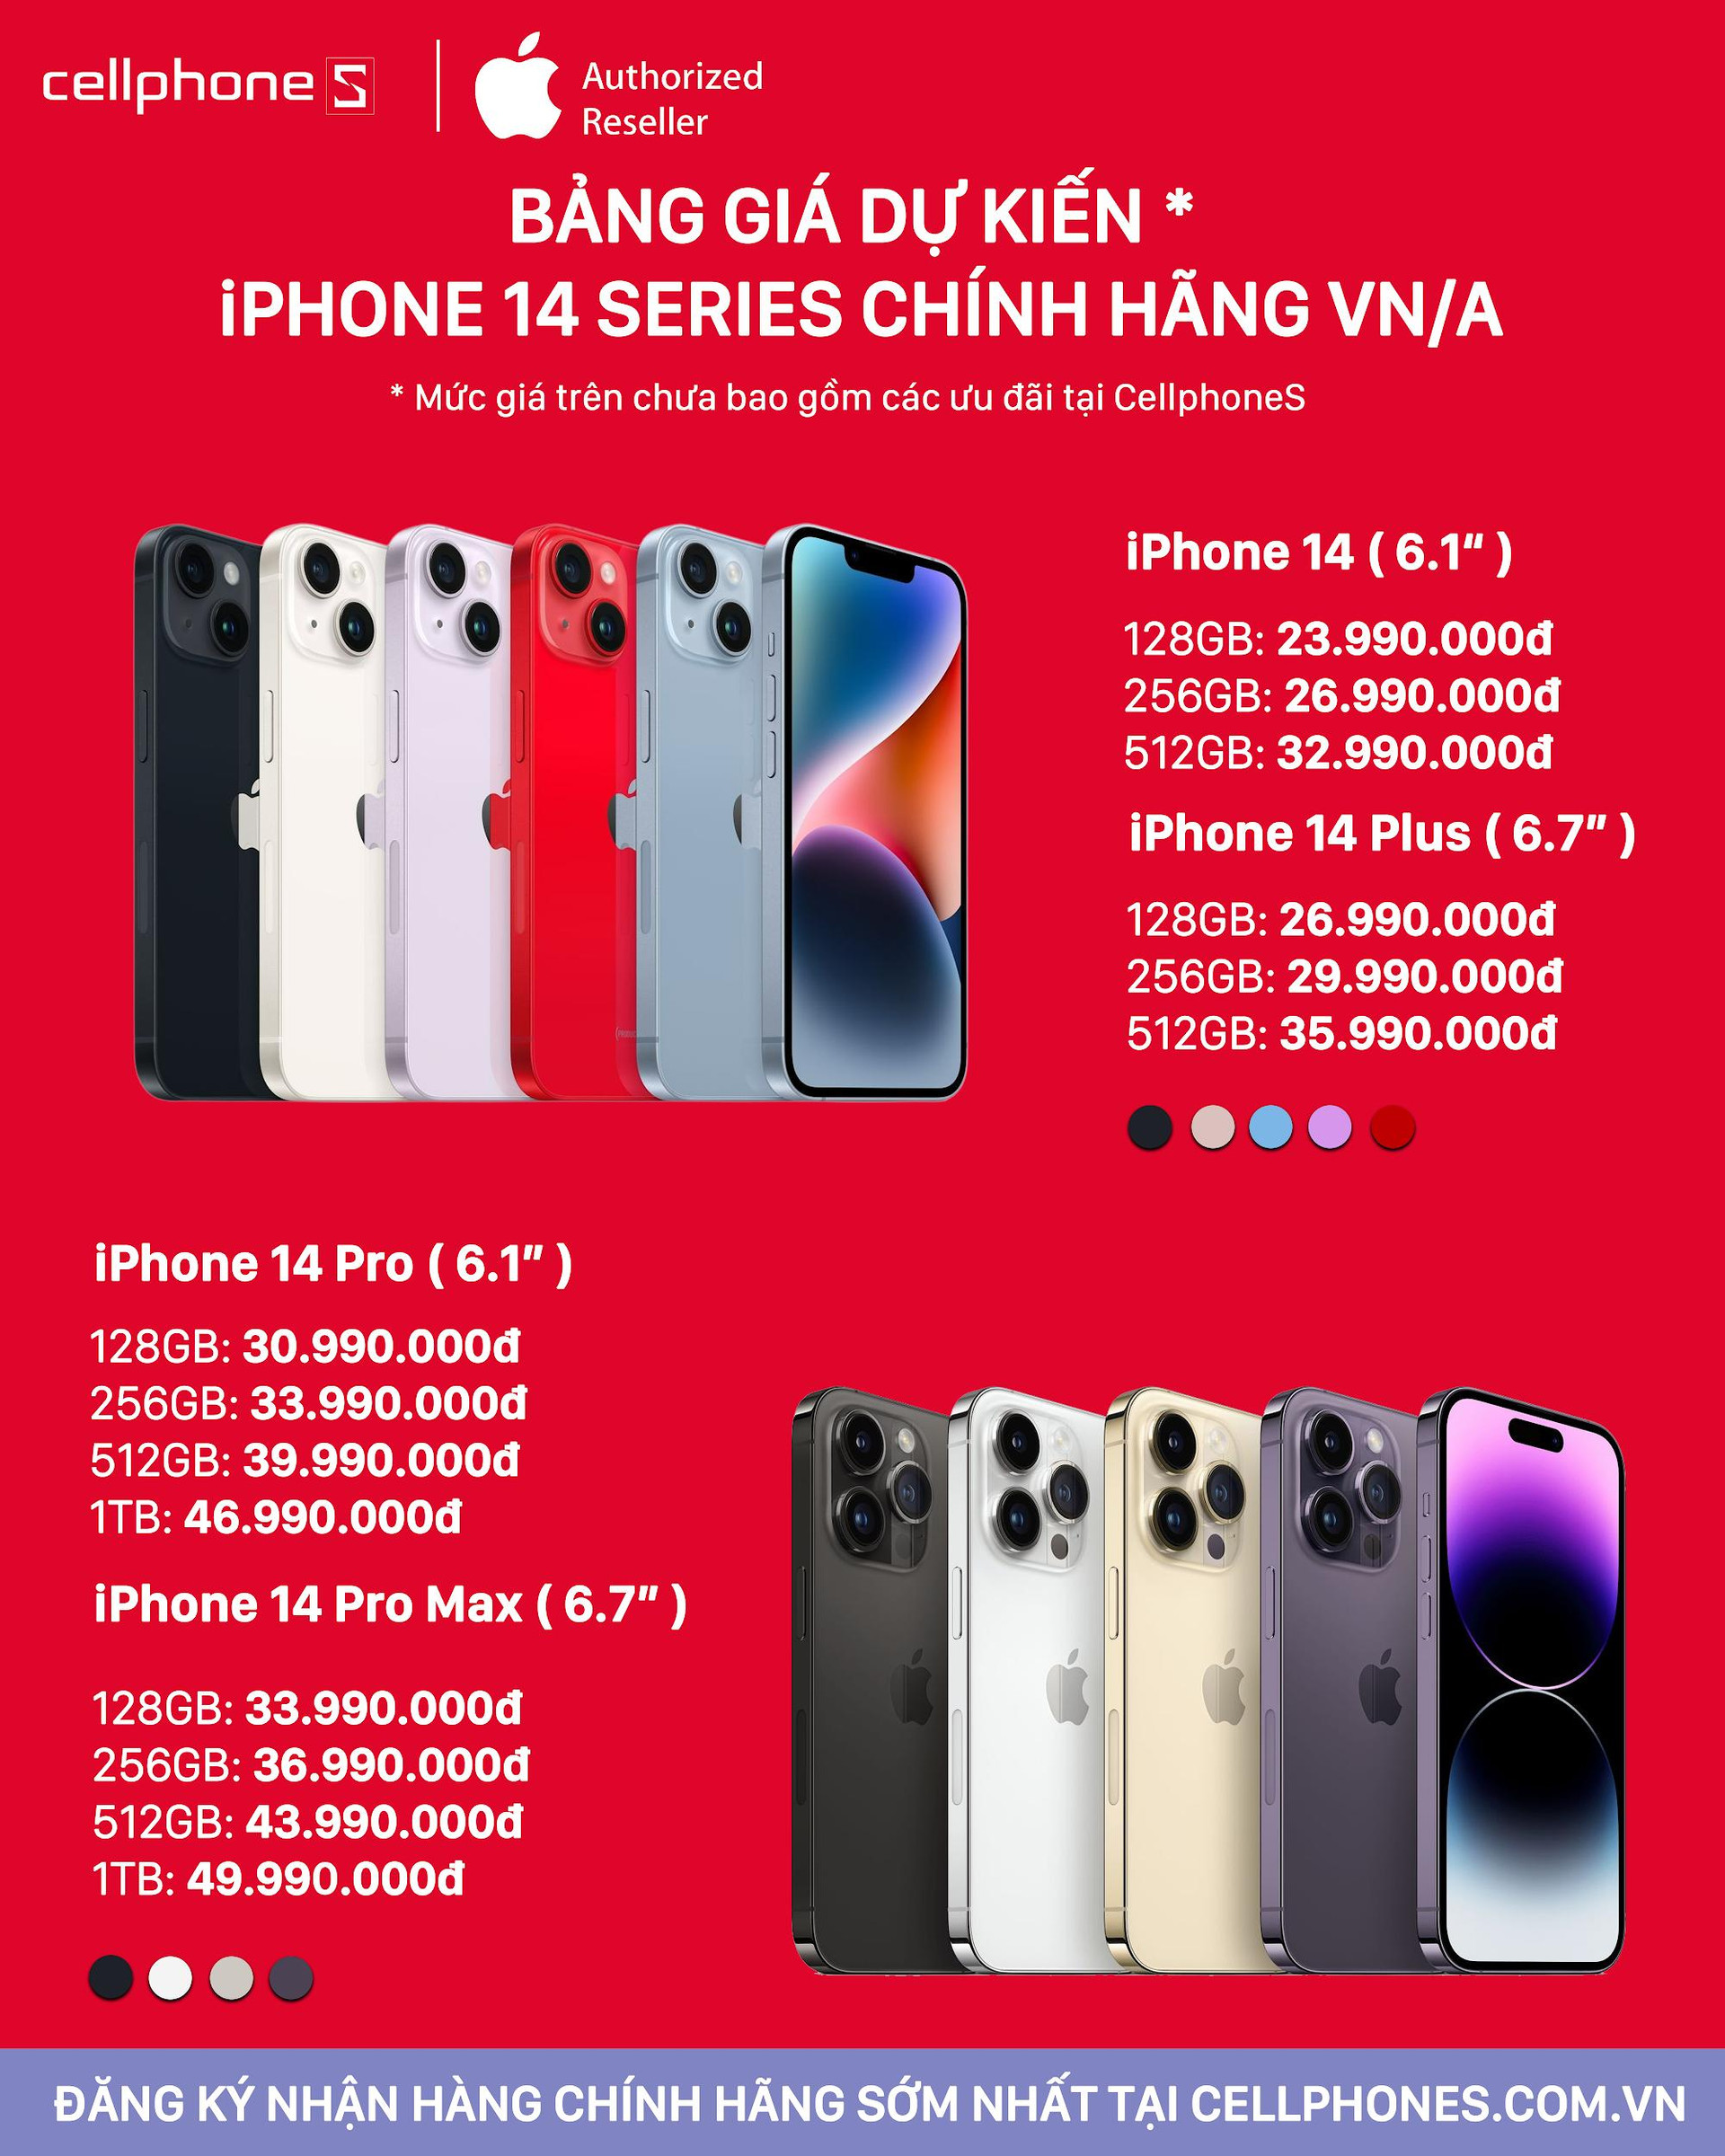 CellphoneS công bố giá bán dự kiến của iPhone 14 series tại thị trường Việt Nam - Ảnh 1.